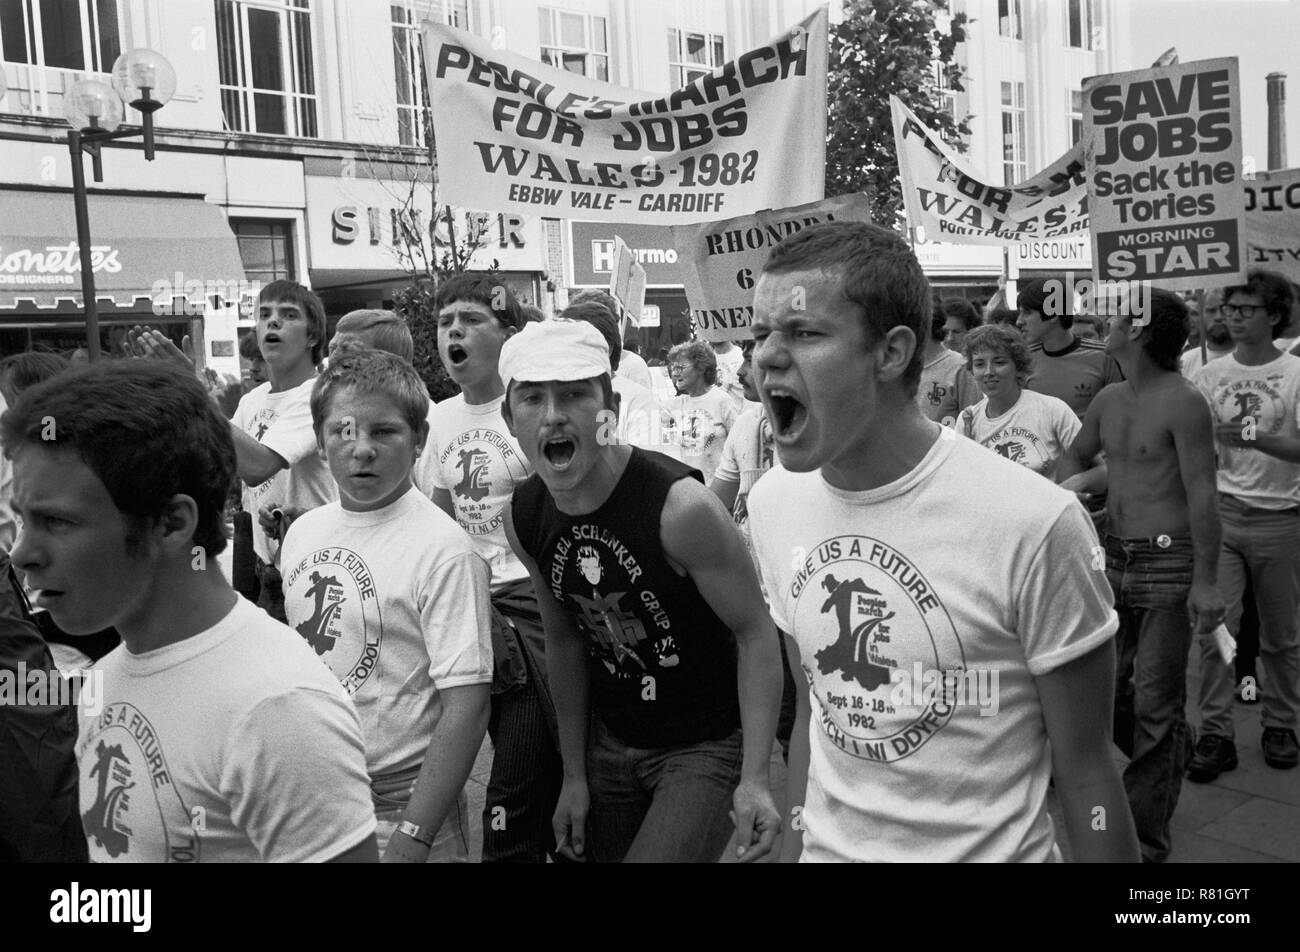 Les "peuples mars pour l'emploi" manifestation contre le chômage, Cardiff, Pays de Galles, Septembre 1982 Banque D'Images